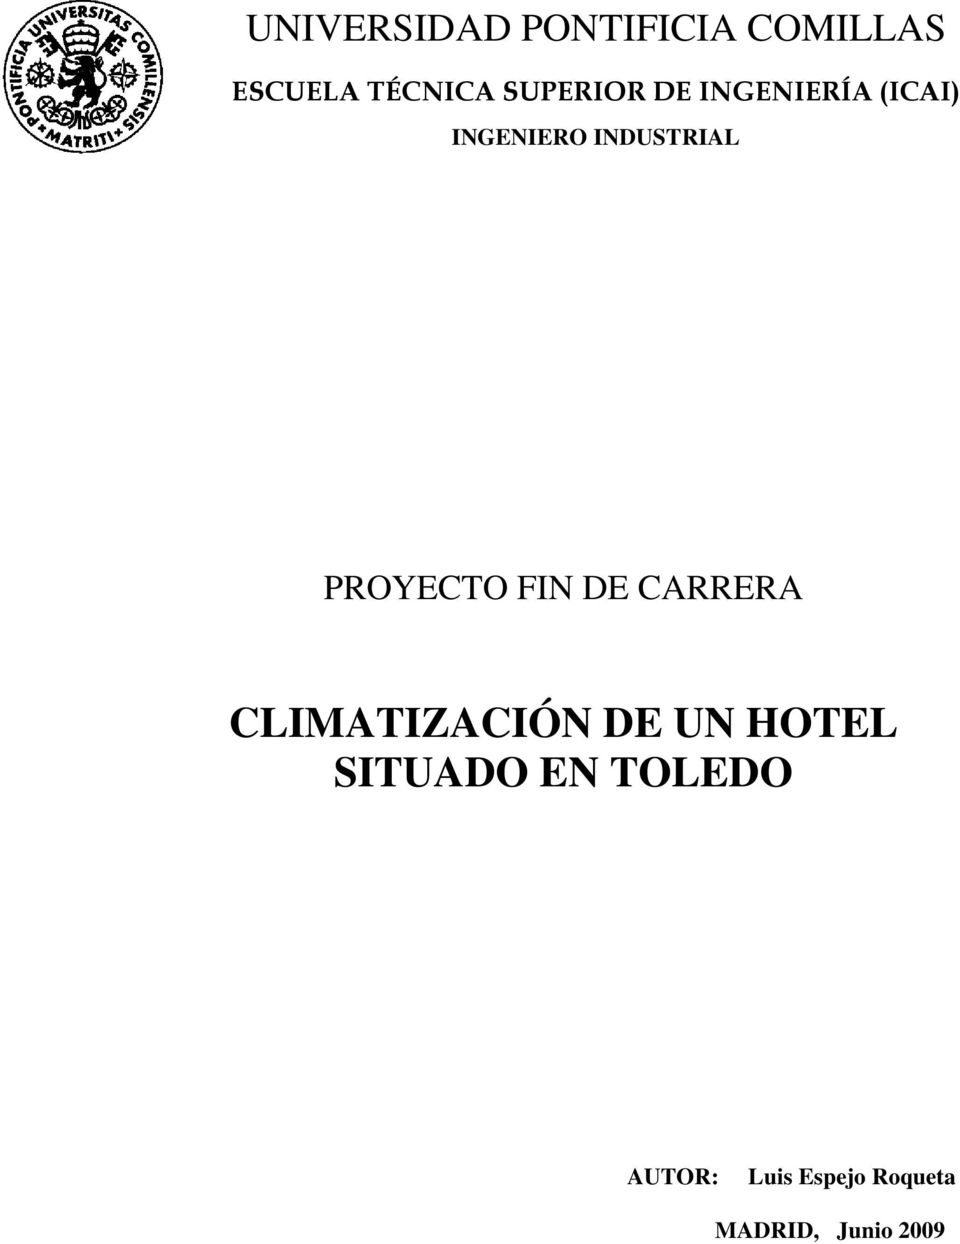 PROYECTO FIN DE CARRERA CLIMATIZACIÓN DE UN HOTEL